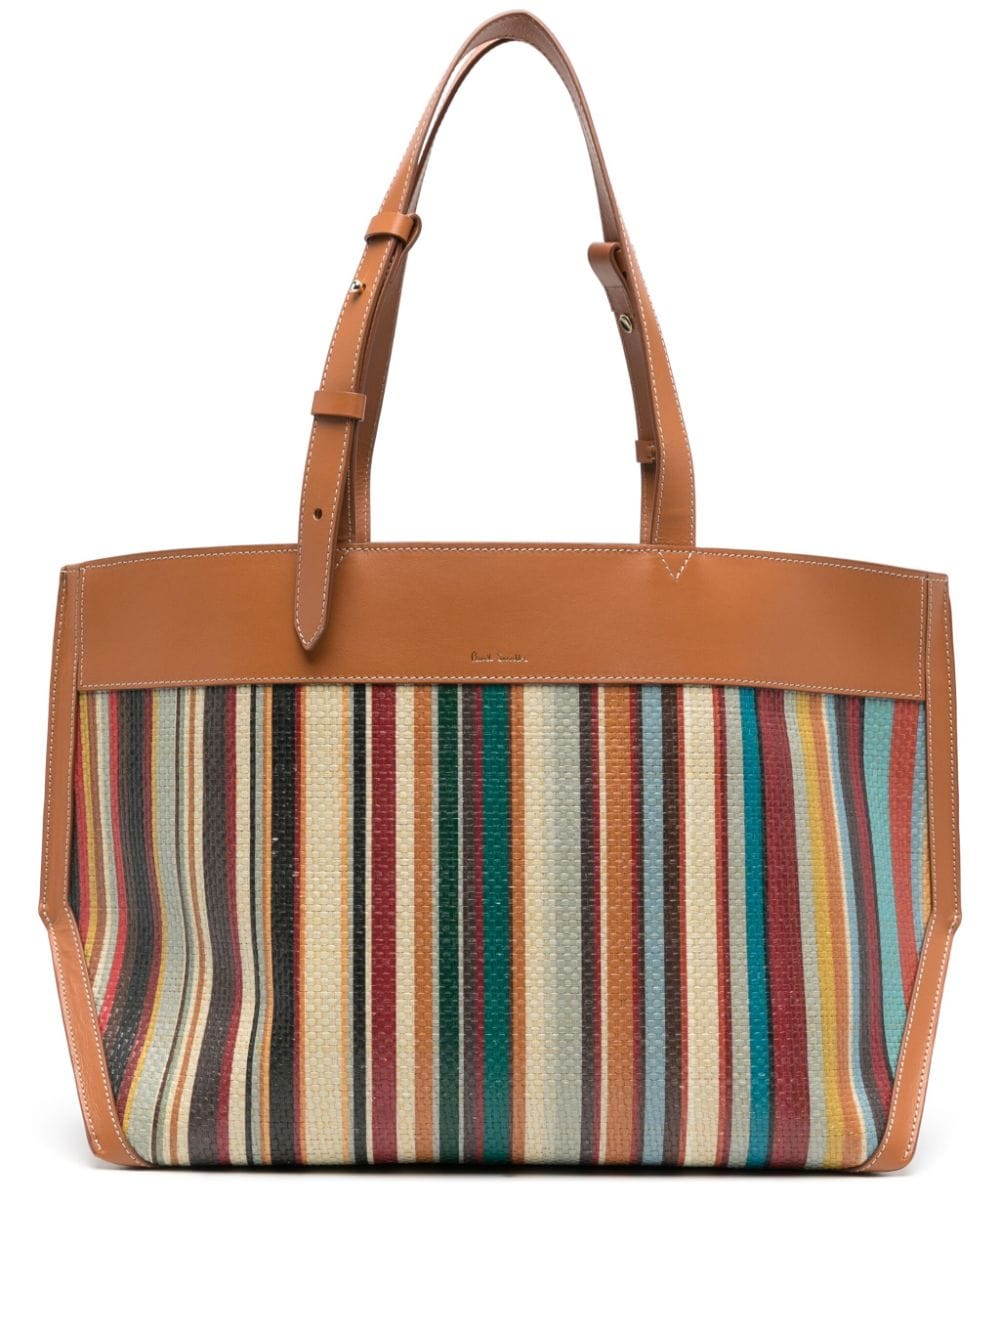 PAUL SMITH Multicolored Striped Tote Handbag